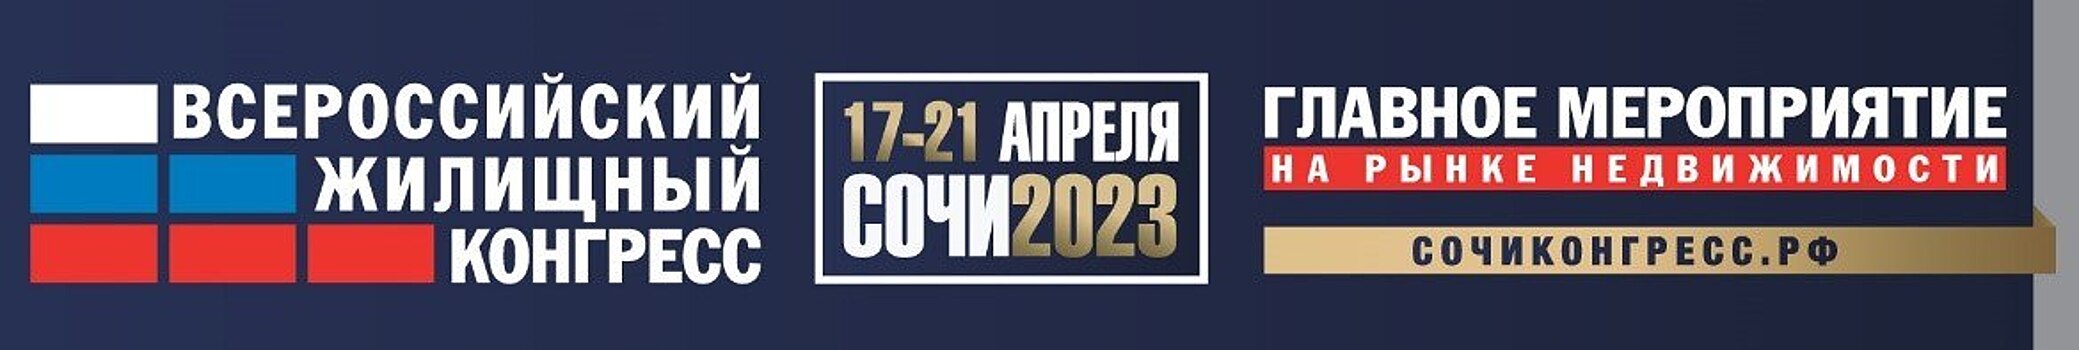 Сочинский Всероссийский жилищный конгресс конгресс состоится 17-21 апреля